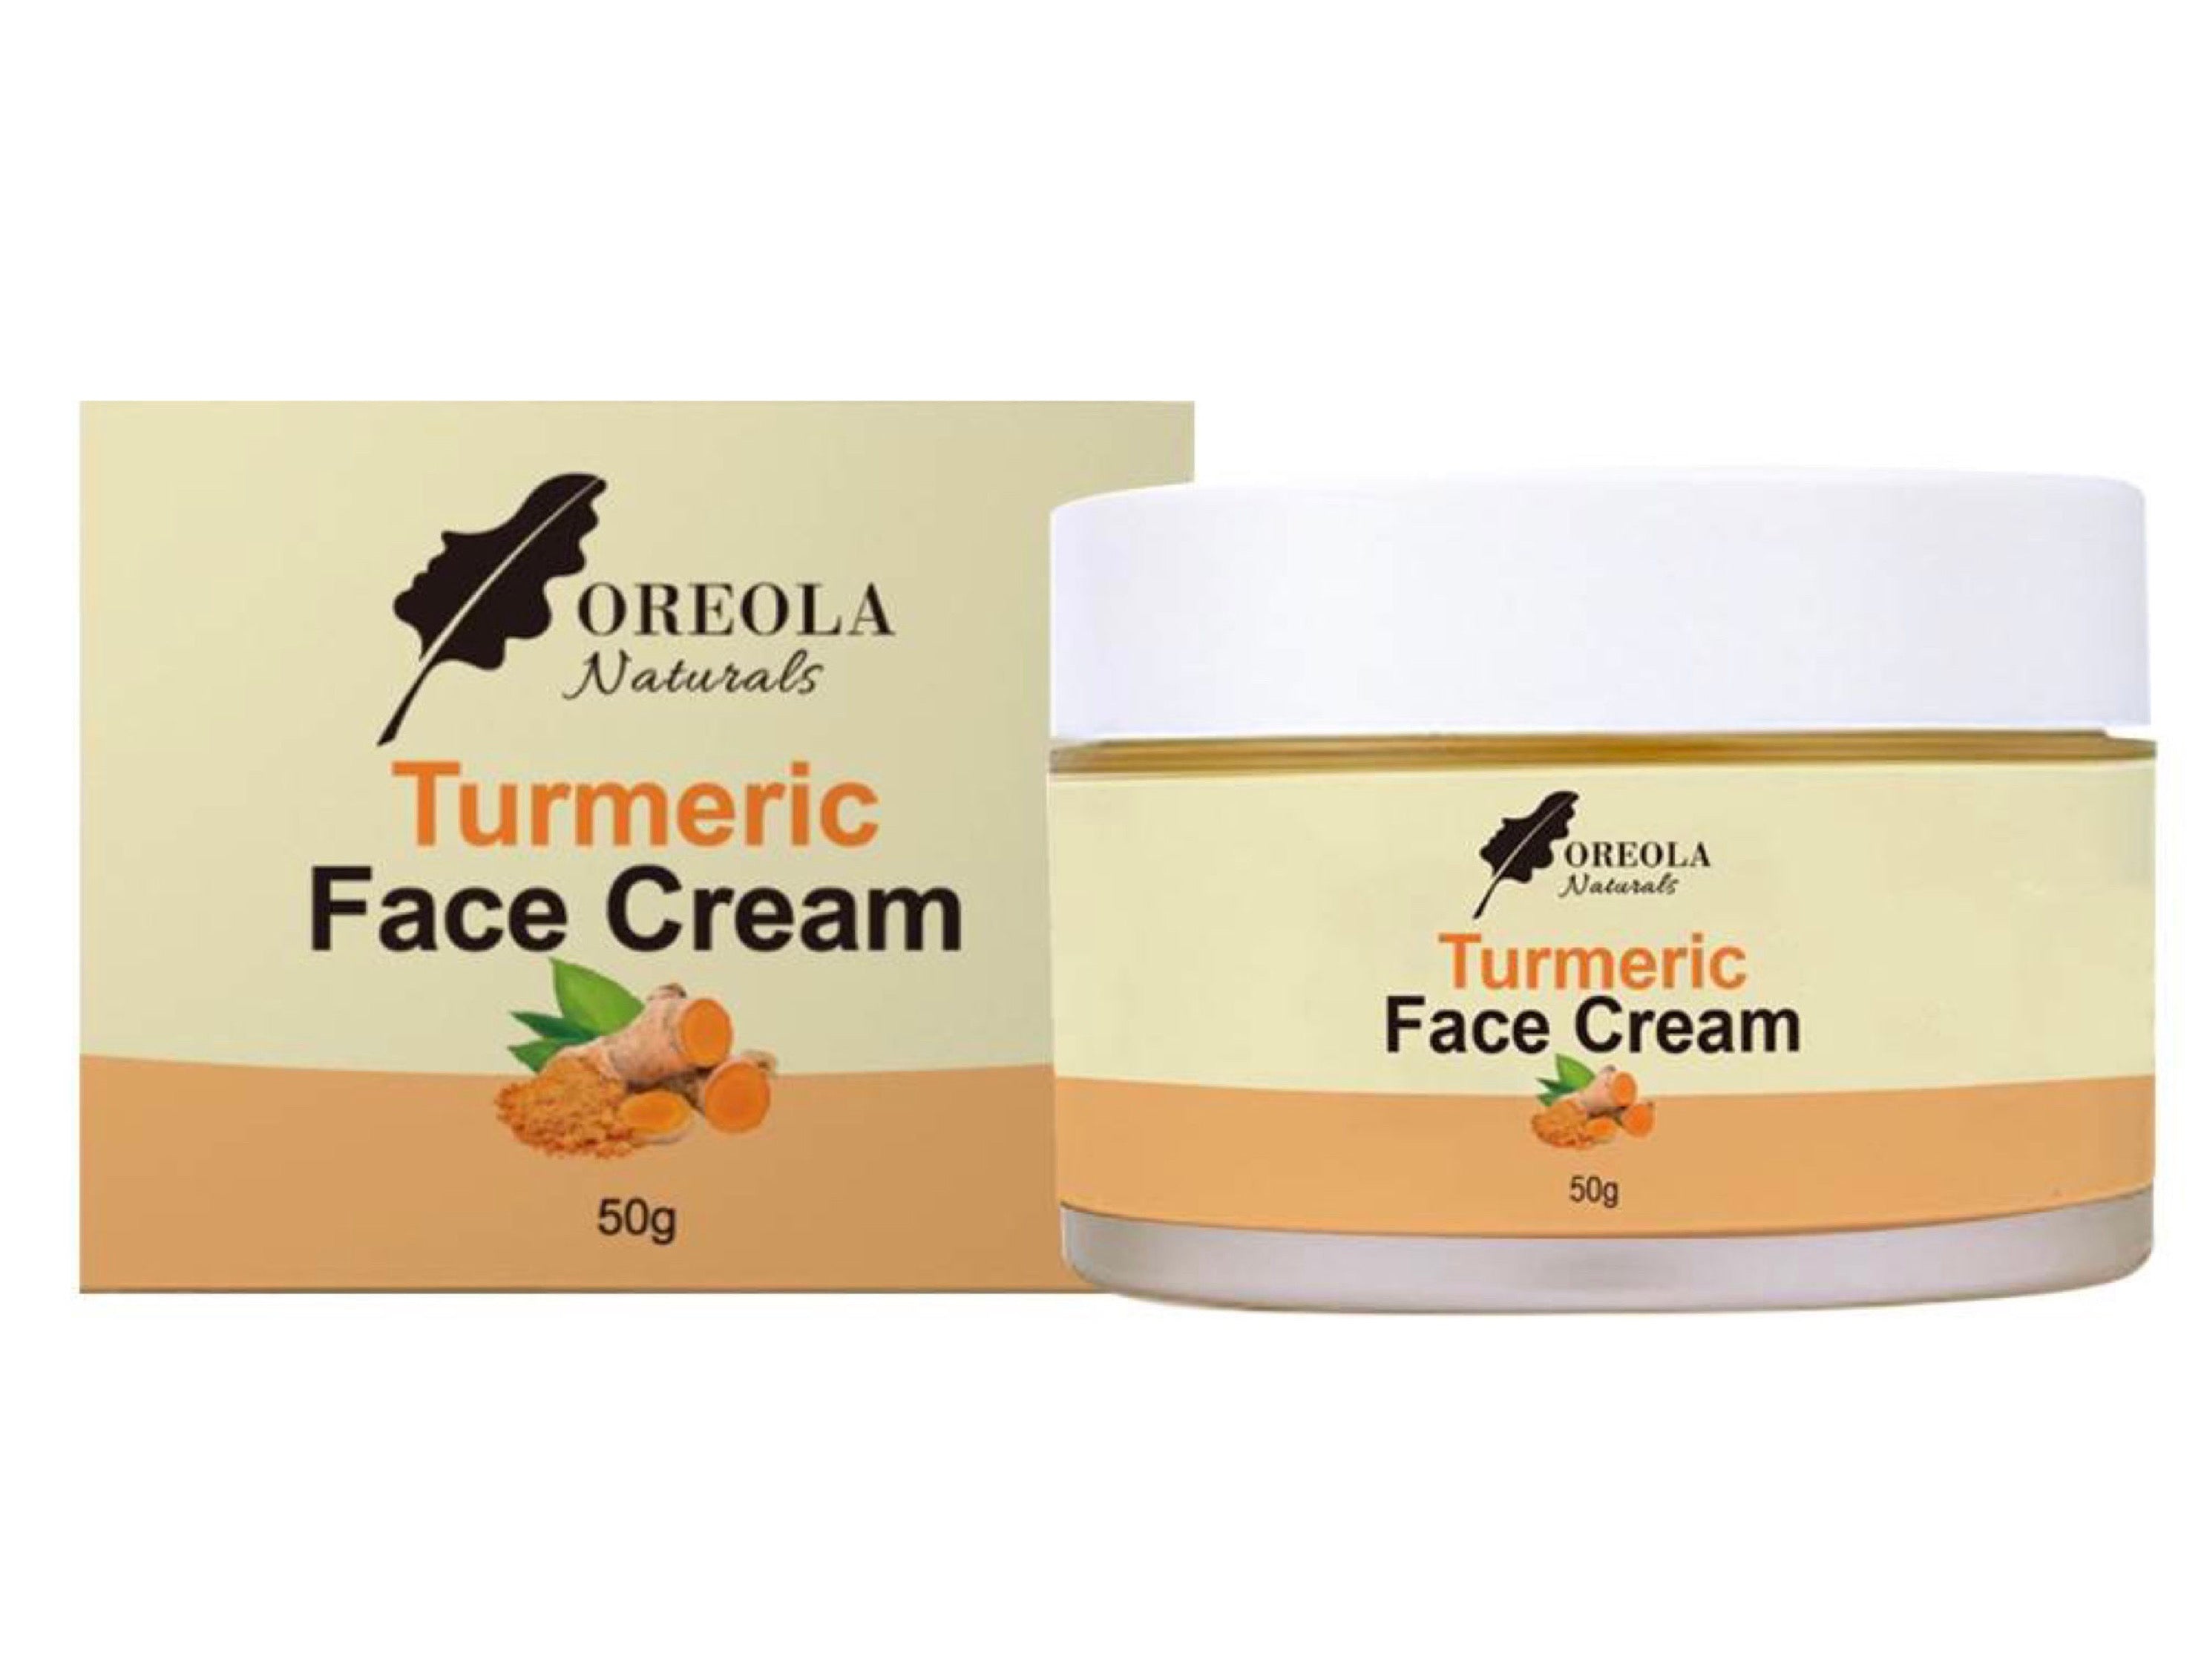 Turmeric Brightening Face Cream 50g